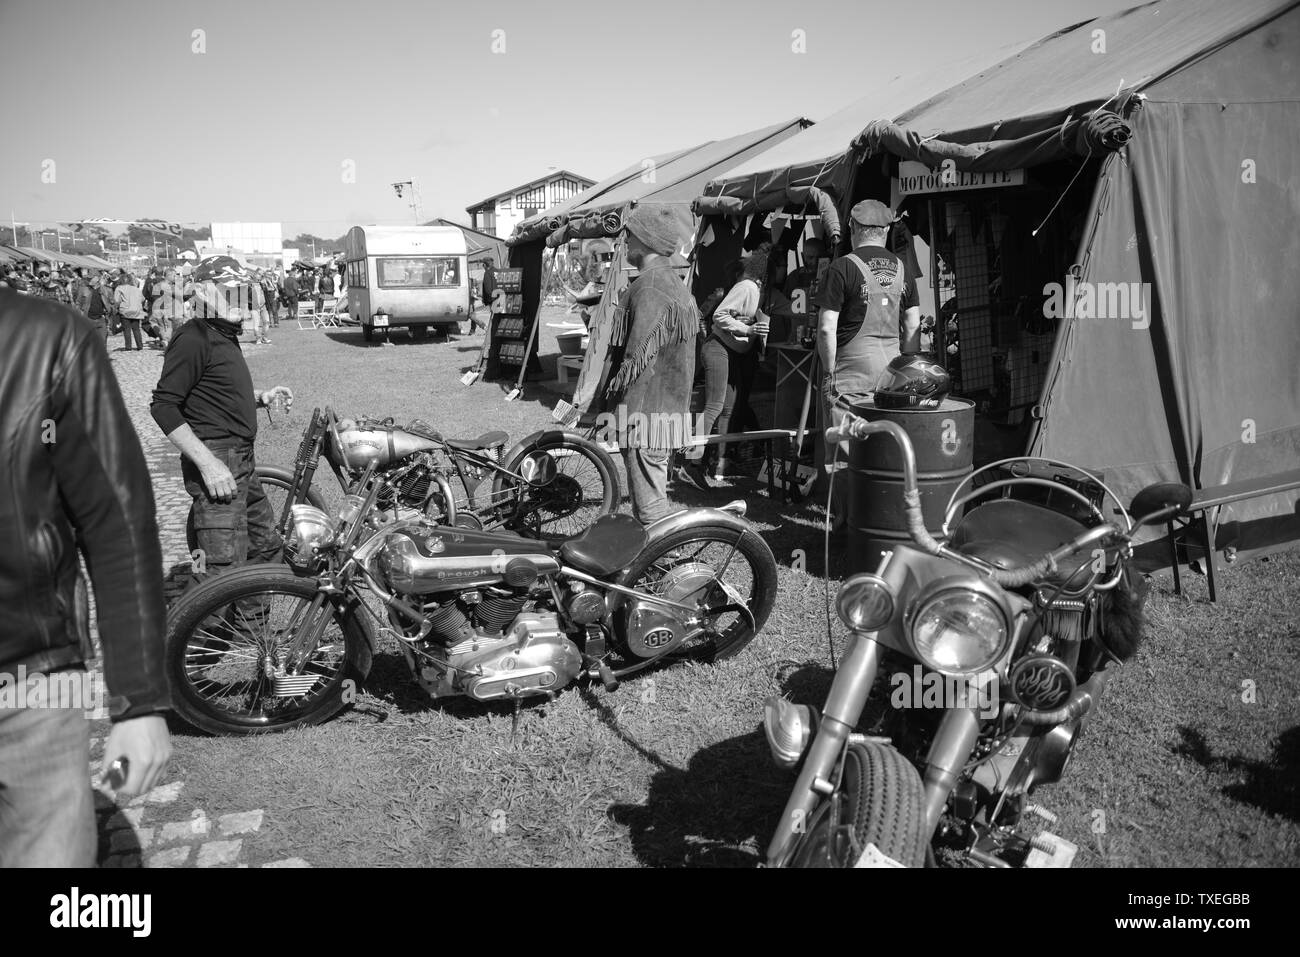 Festival de motards, pasakdek Banque D'Images